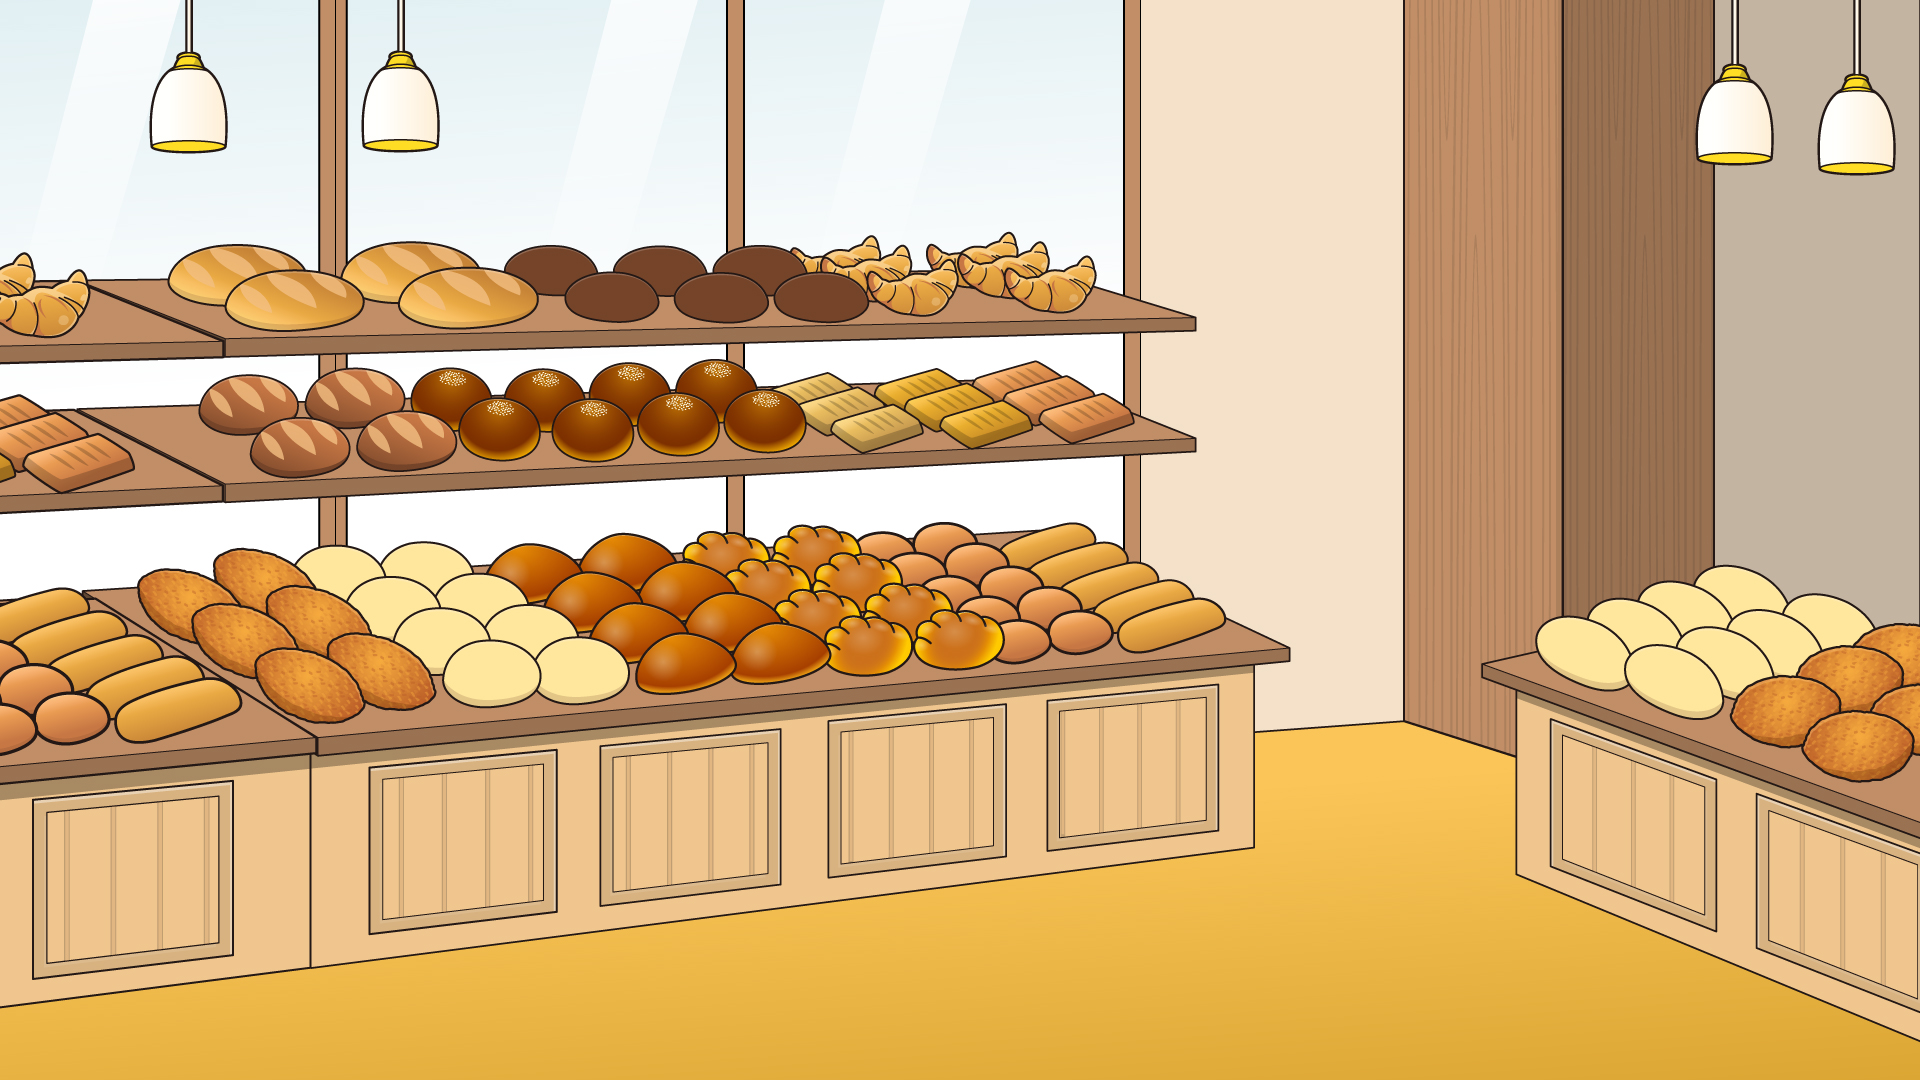 たくさんのパンが並んだパン屋さん